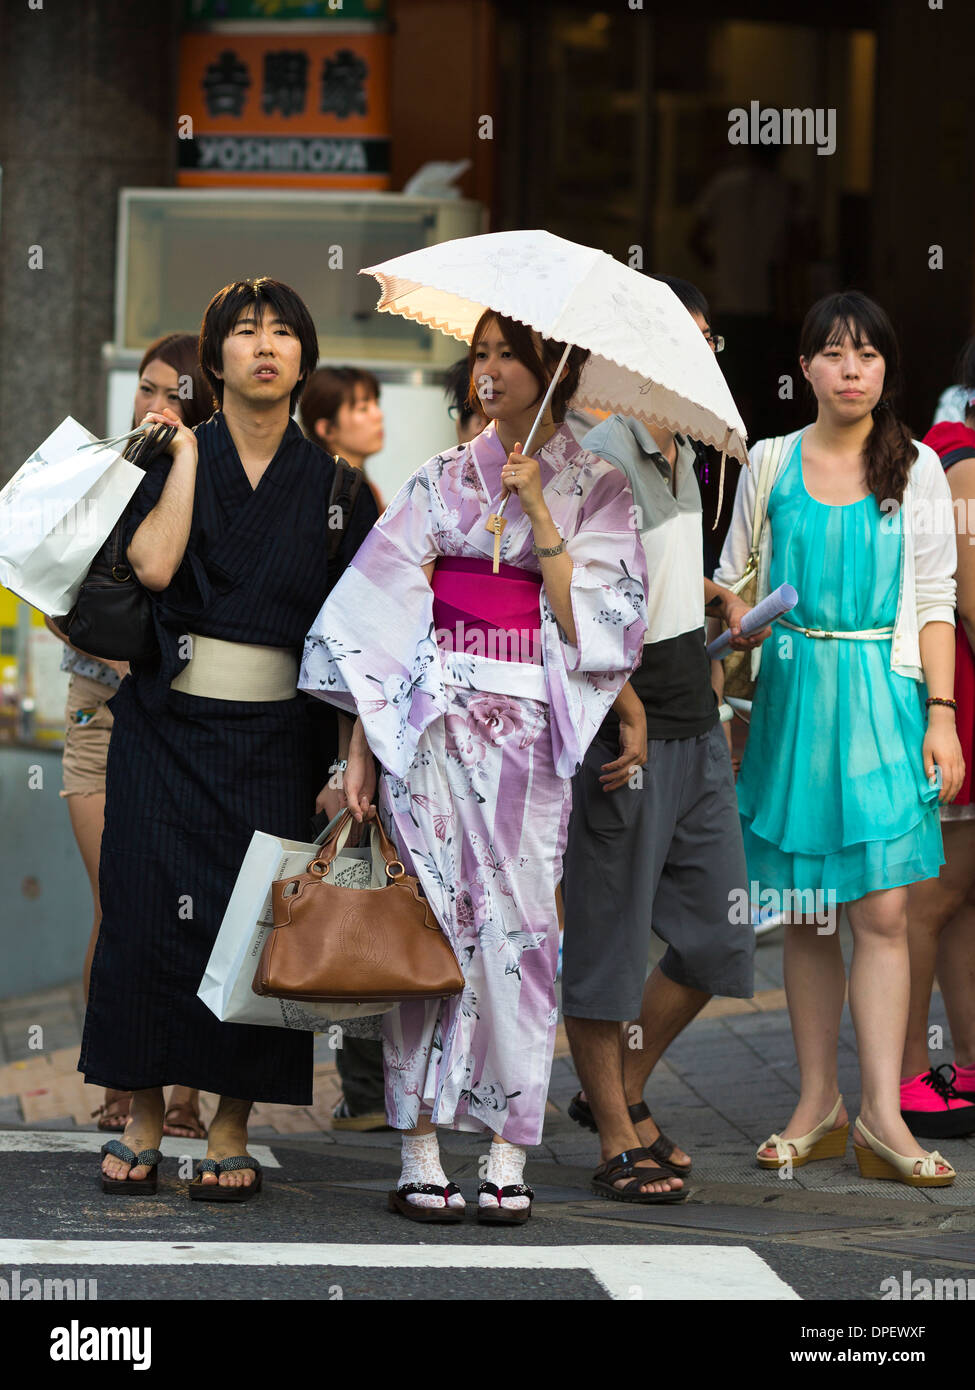 Il popolo giapponese vestito tradizionalmente con un kimono per la donna e yukata per l'uomo, Tokyo (Harajuku), Giappone Foto Stock